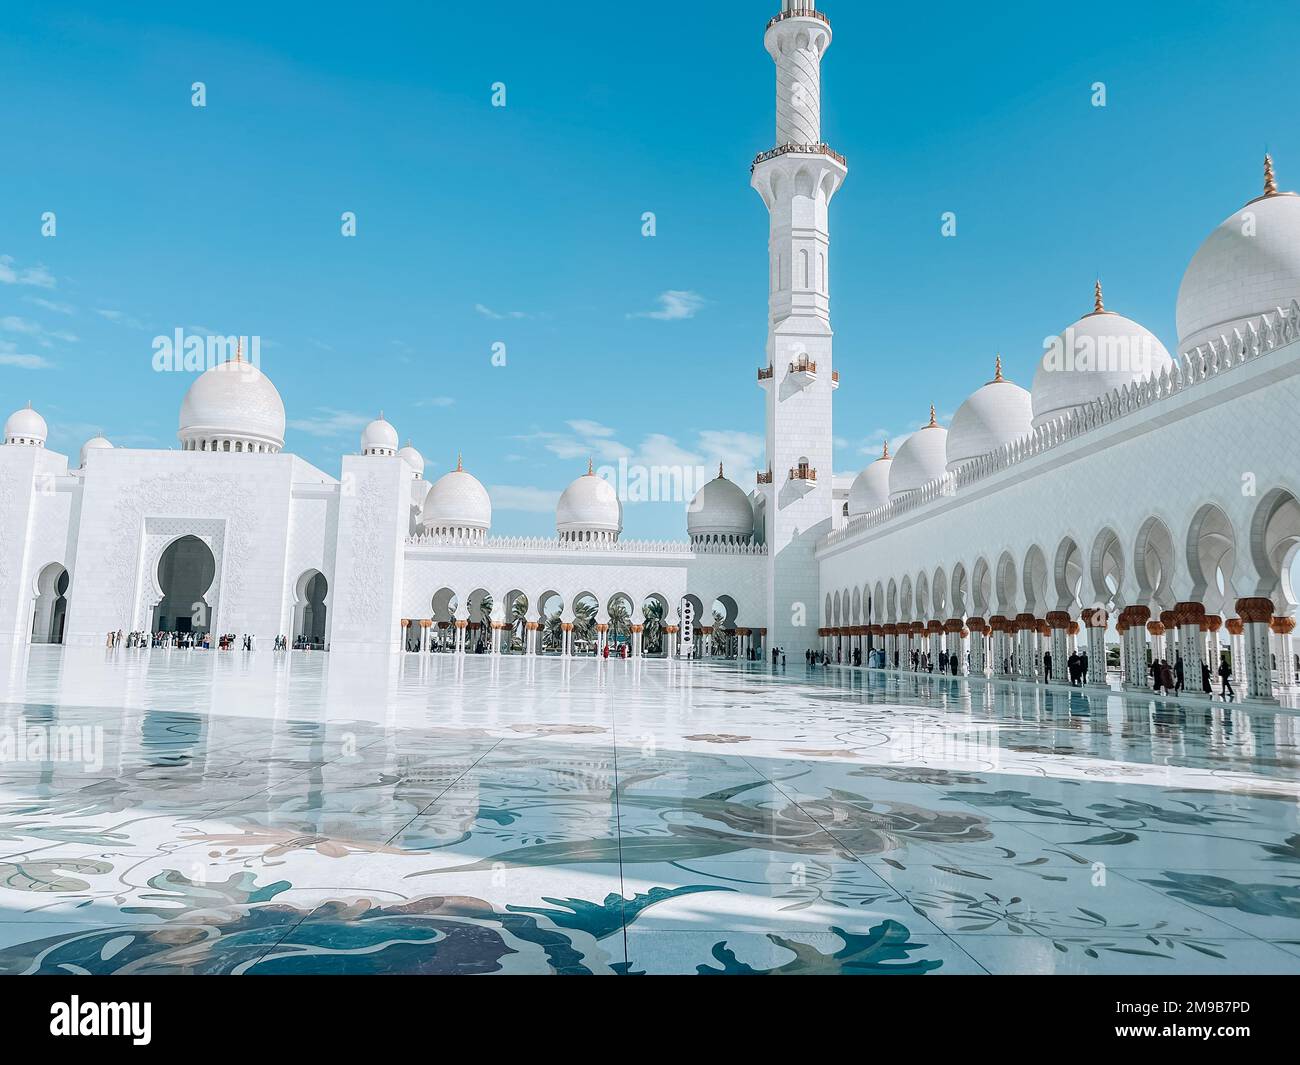 Gran mezquita de Abu Dhabi Sheik Zayed ubicada en la capital de los Emiratos Árabes Unidos | Hermosa arquitectura islámica | Atracción turística | Rama Foto de stock